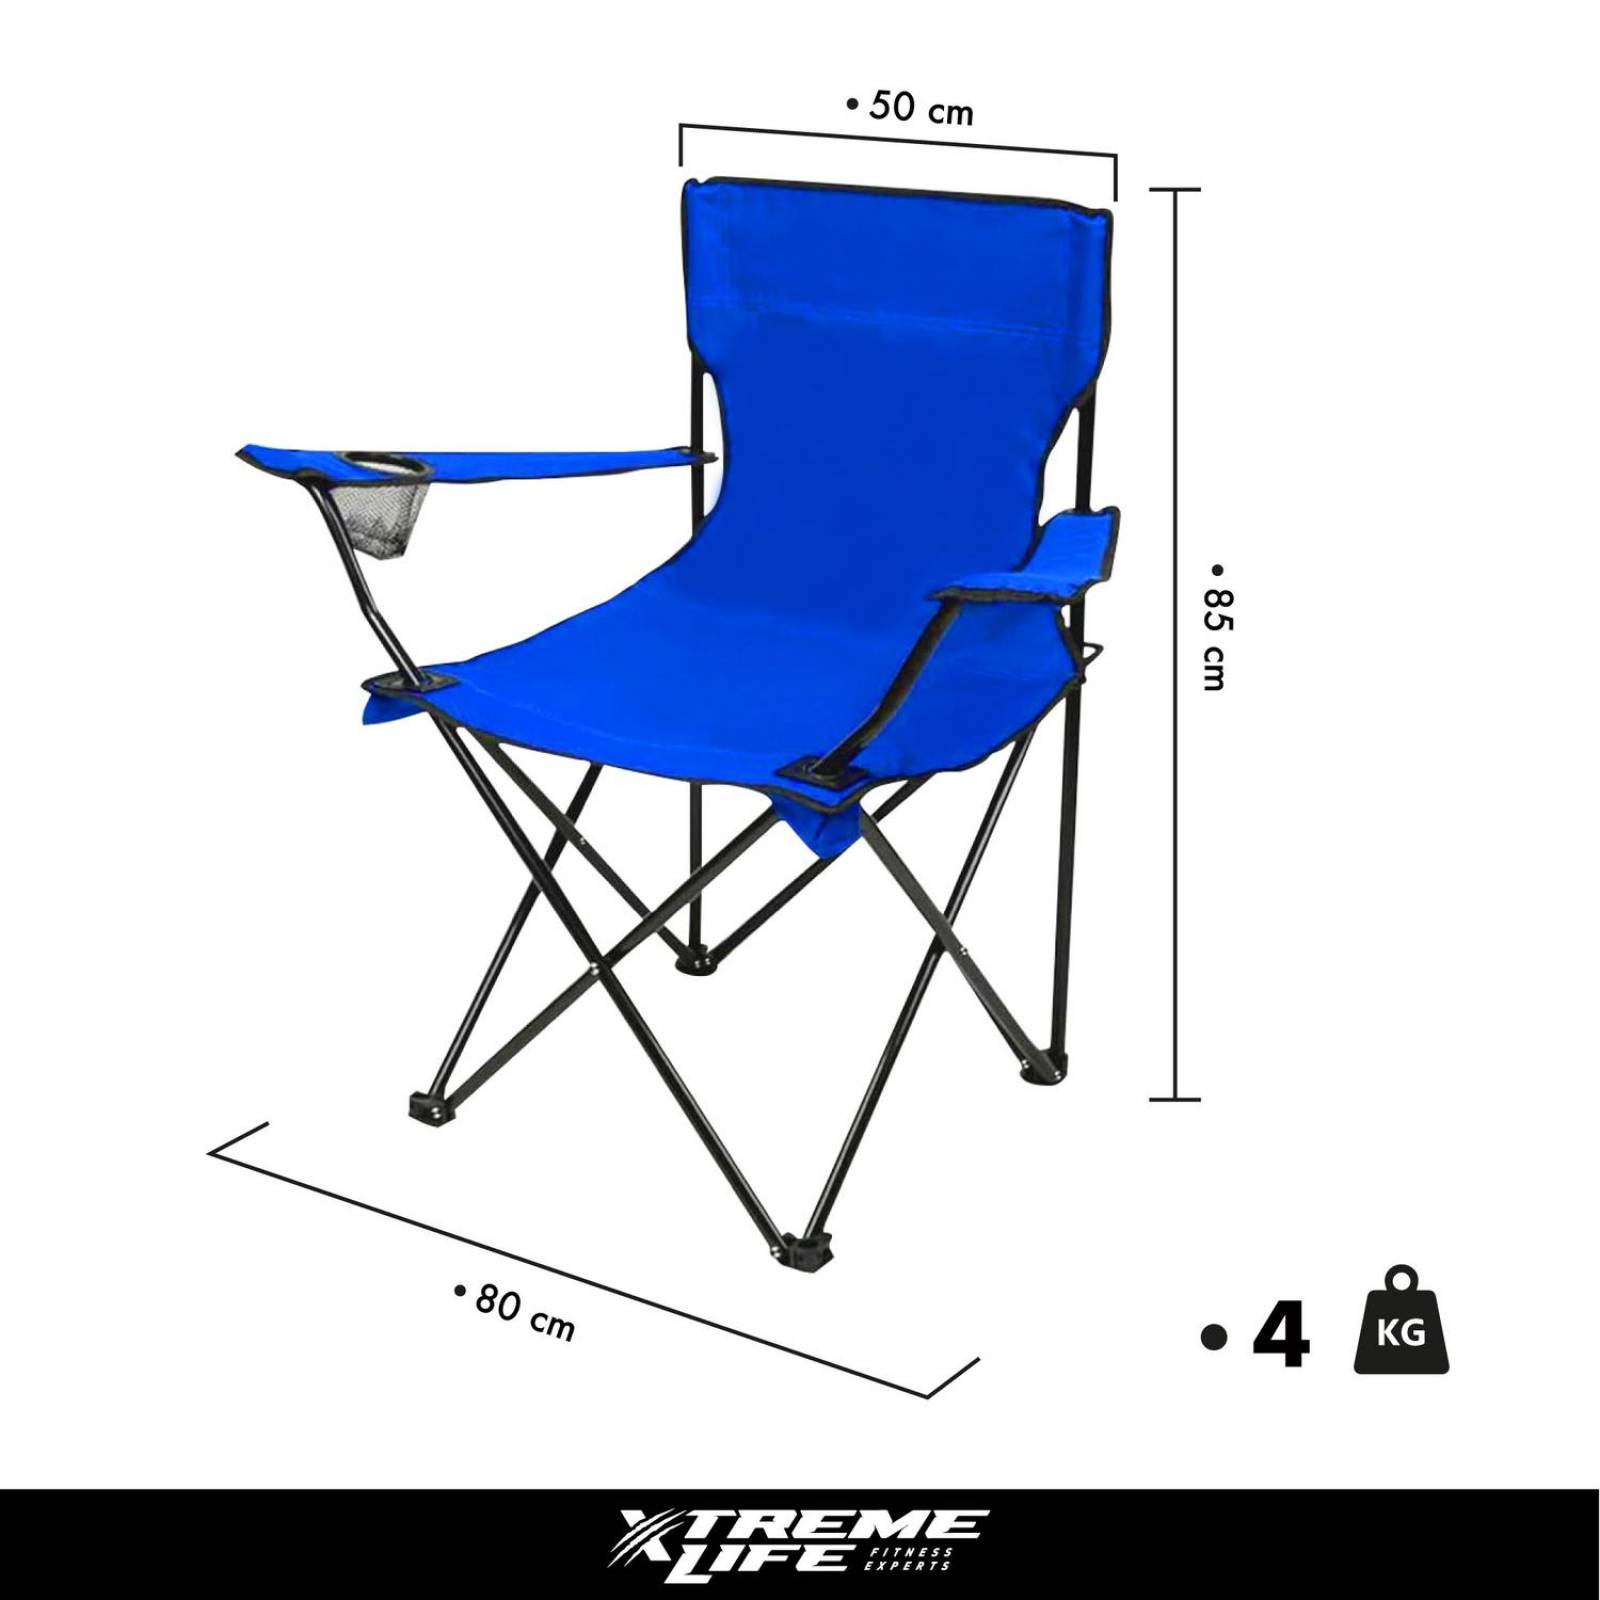 Trademark Innovations Esterilla plegable portátil para silla de playa